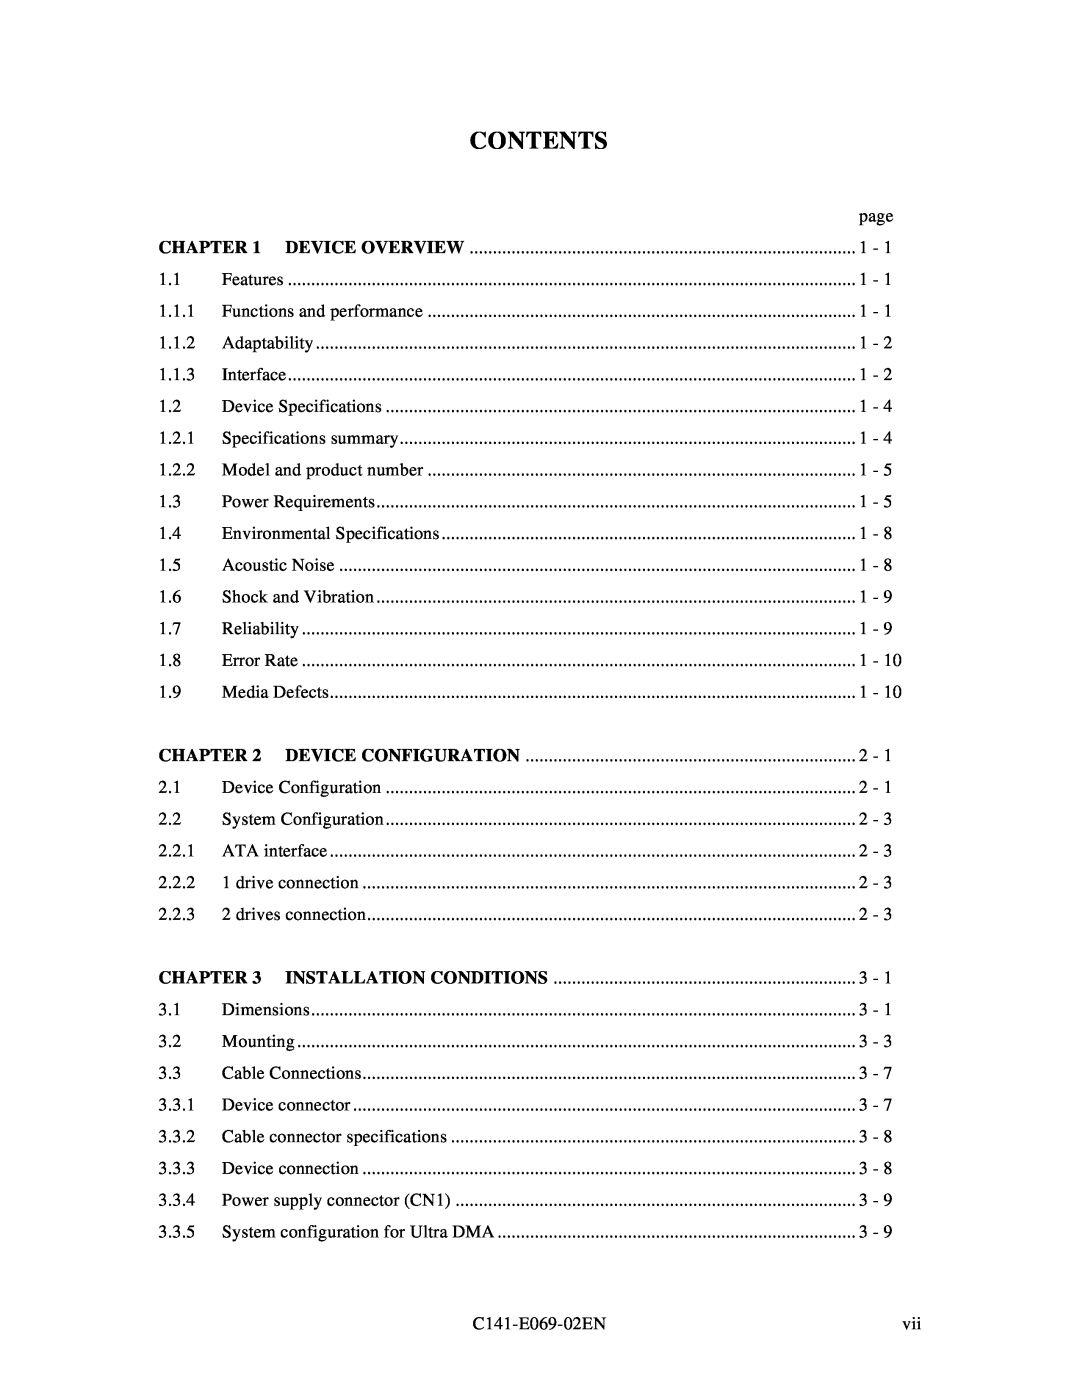 Fujitsu MPD3XXXAT manual Contents, Chapter 